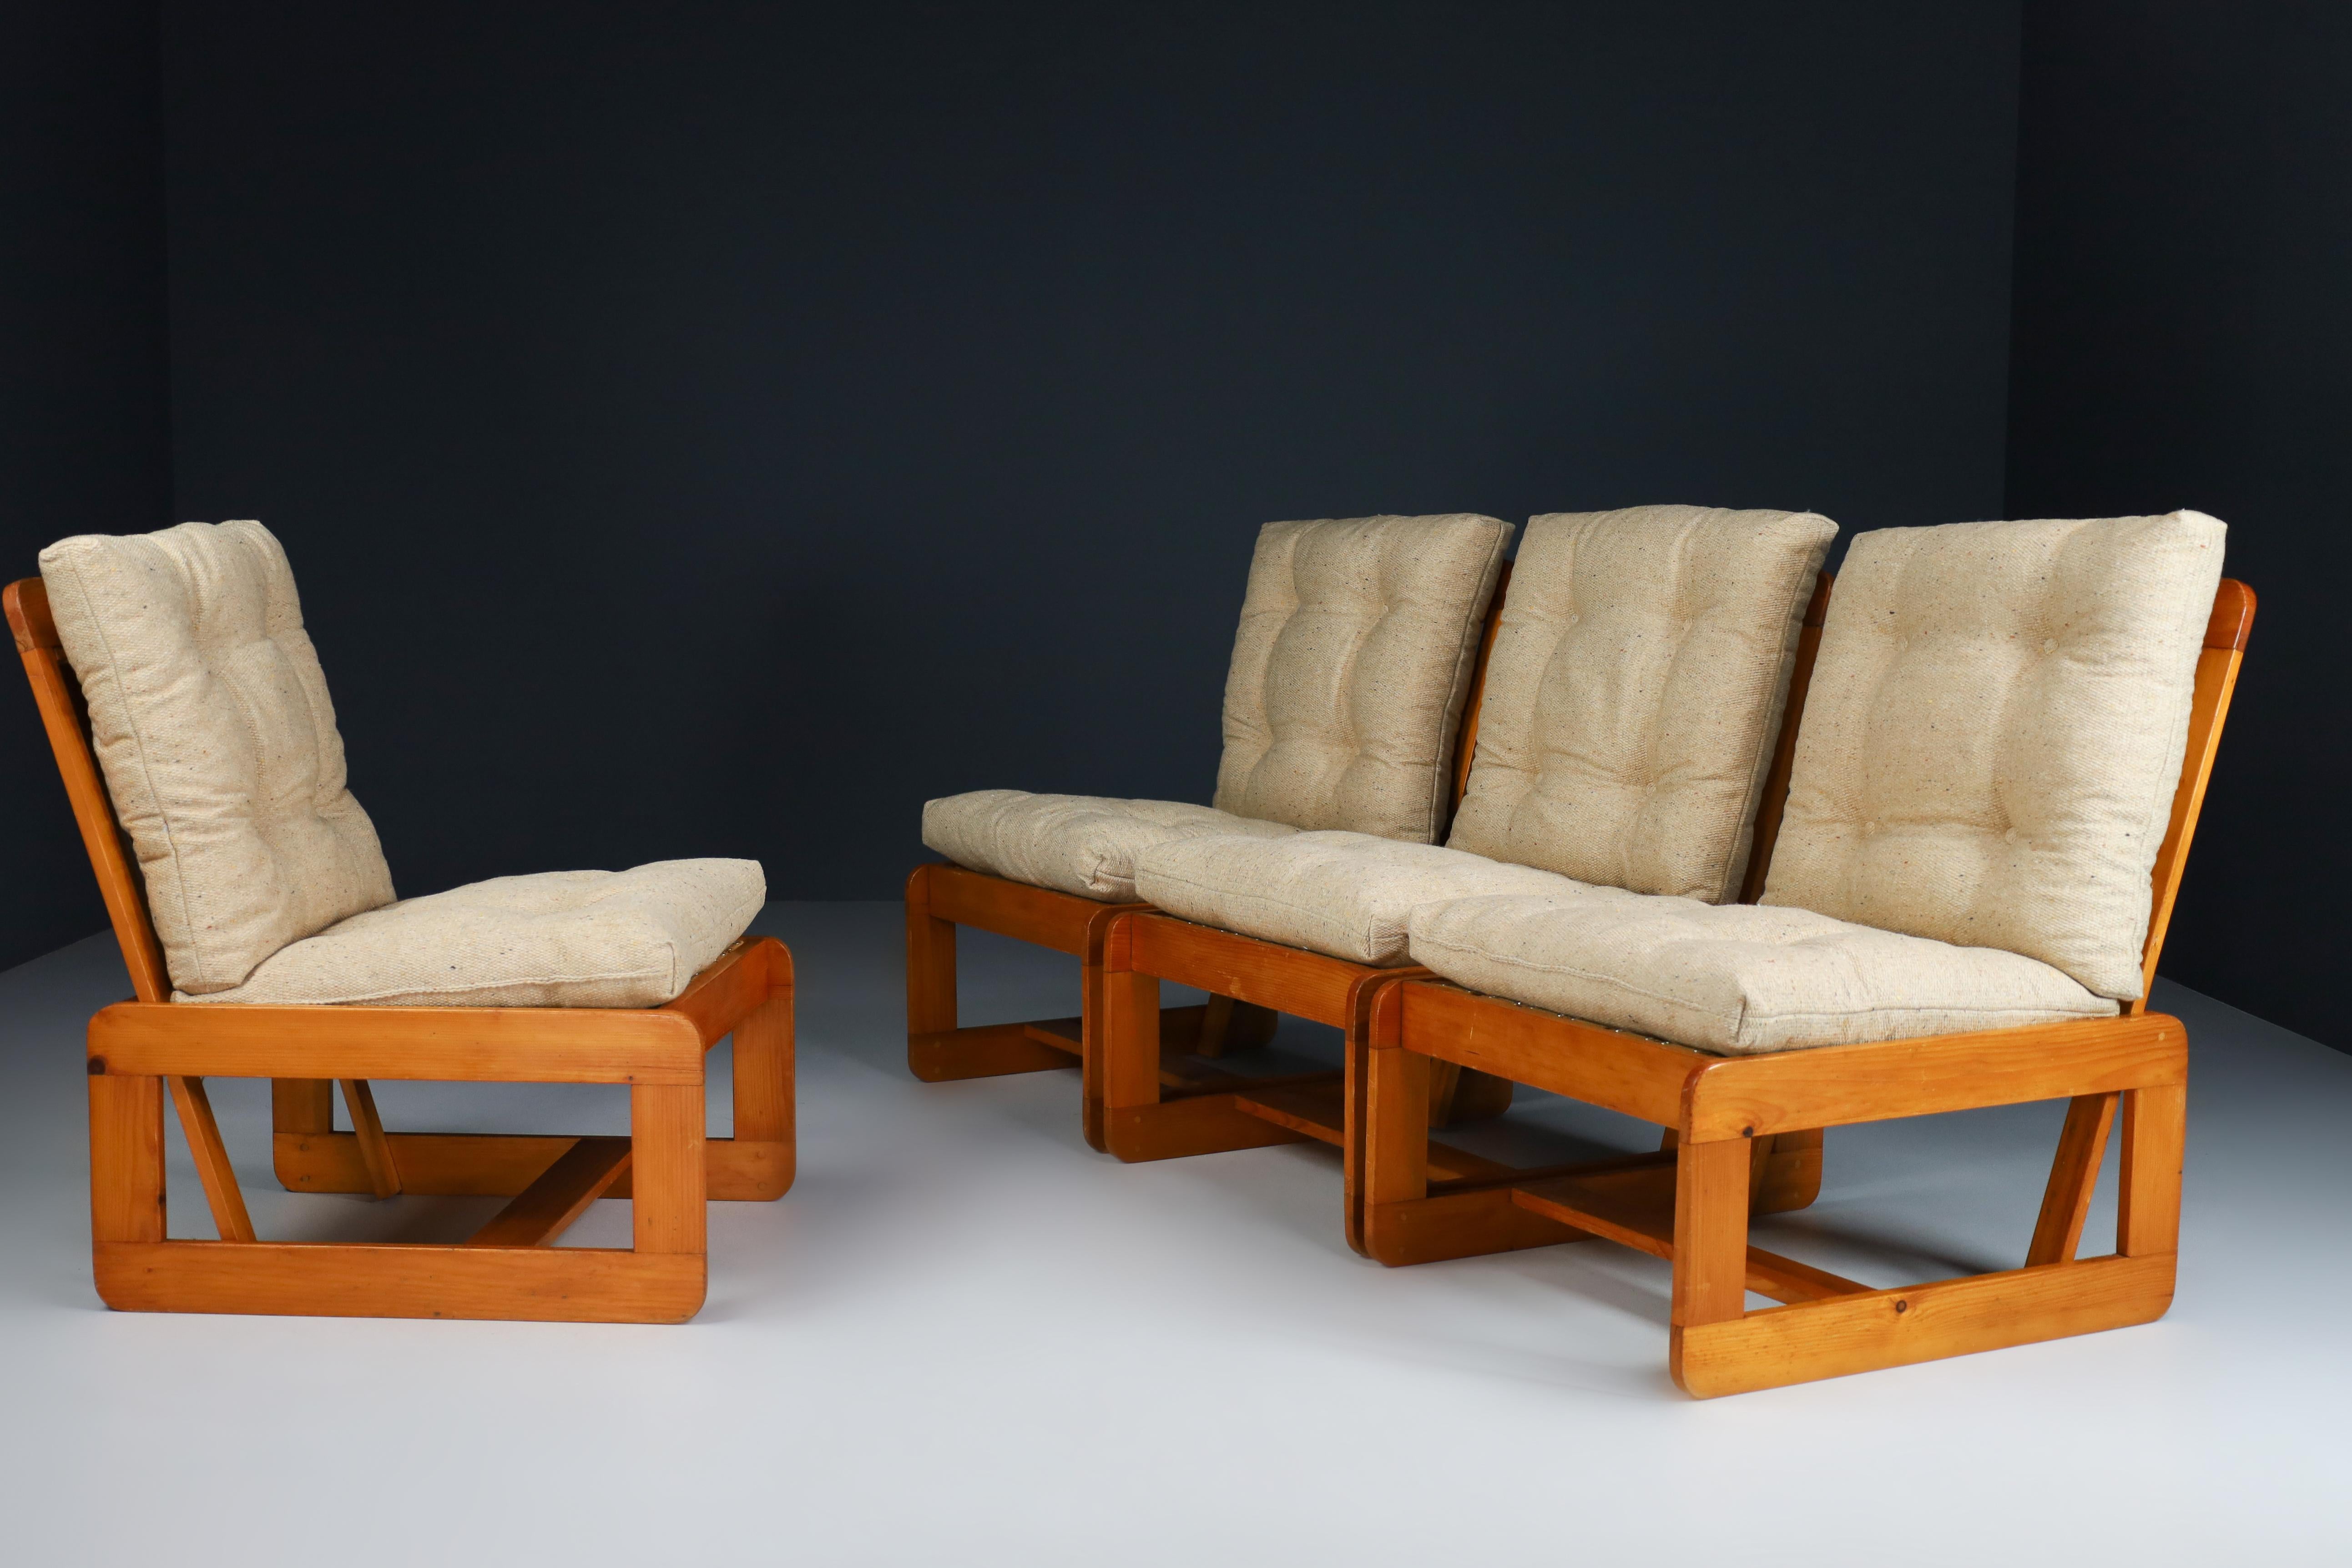 Quatre chaises longues en pin naturel avec un tissu de jute original ont été fabriquées en Italie dans les années 1970. Ces chaises en pin massif présentent une belle patine naturelle, sont dans un superbe état d'origine et ont une grande patine et